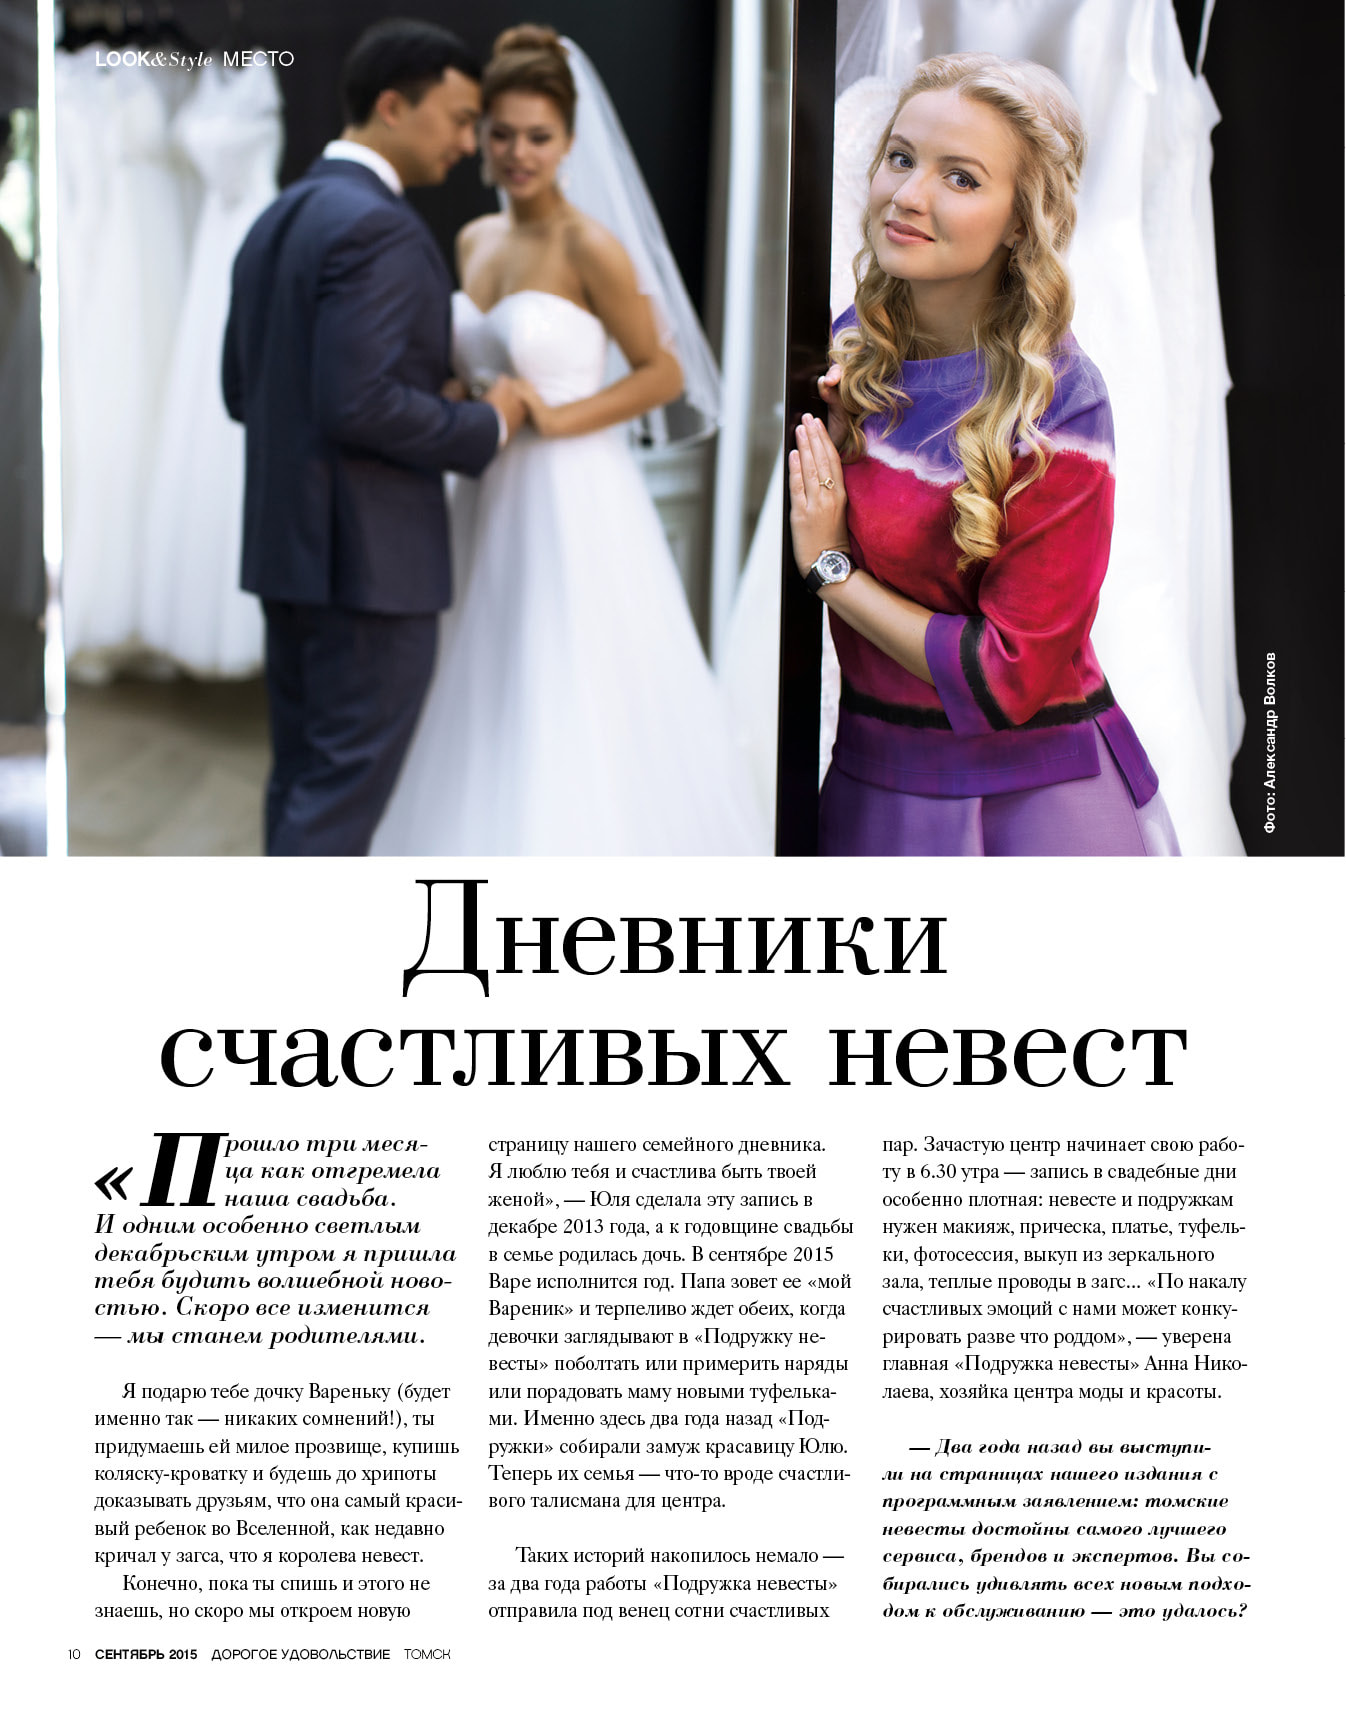 Страница журнала дорогое удовольствие Дневники счастливых невест